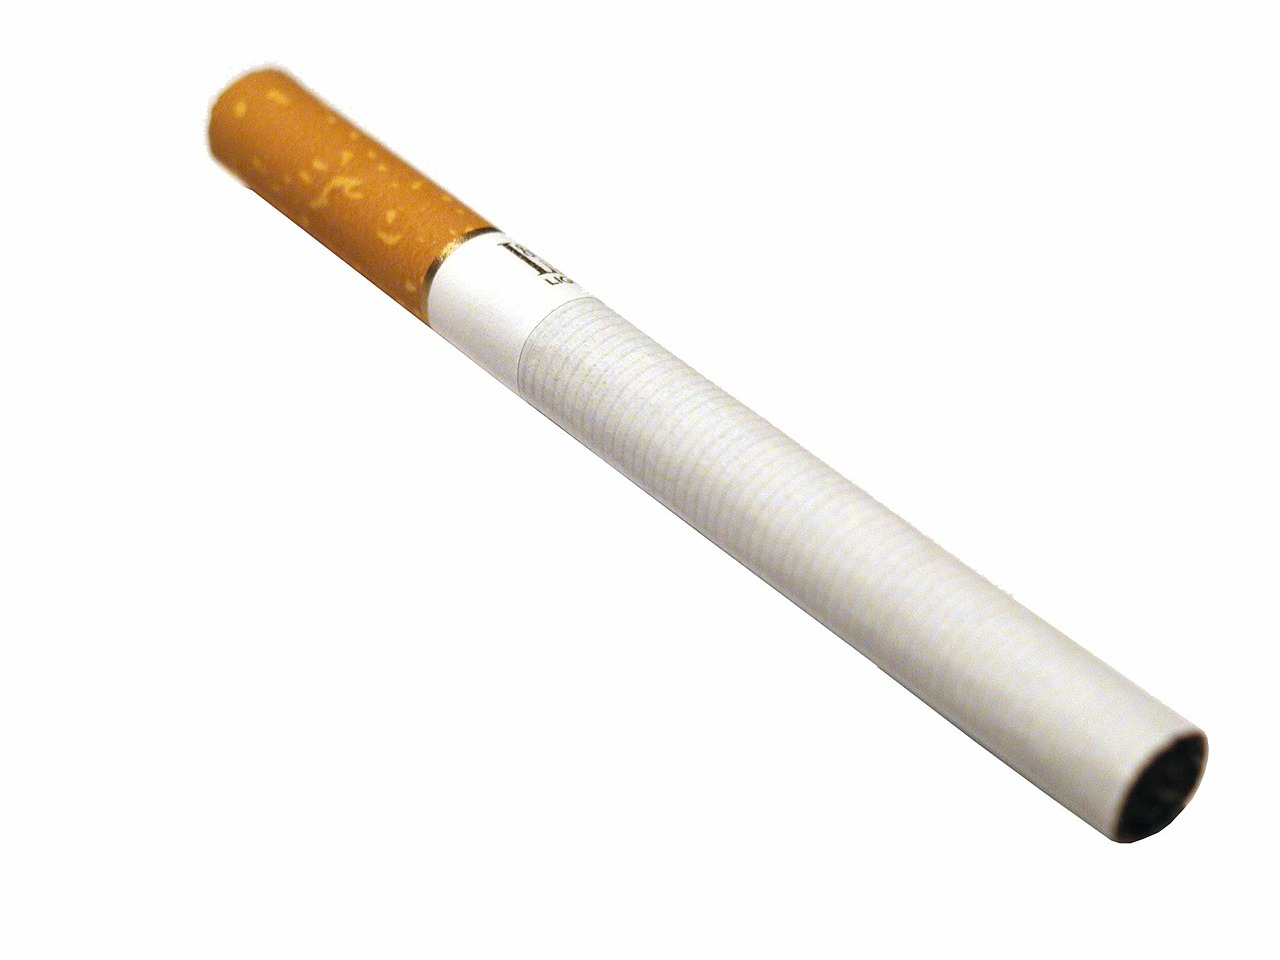 El consumo de tabaco causa tres veces más muertes al año que COVID19